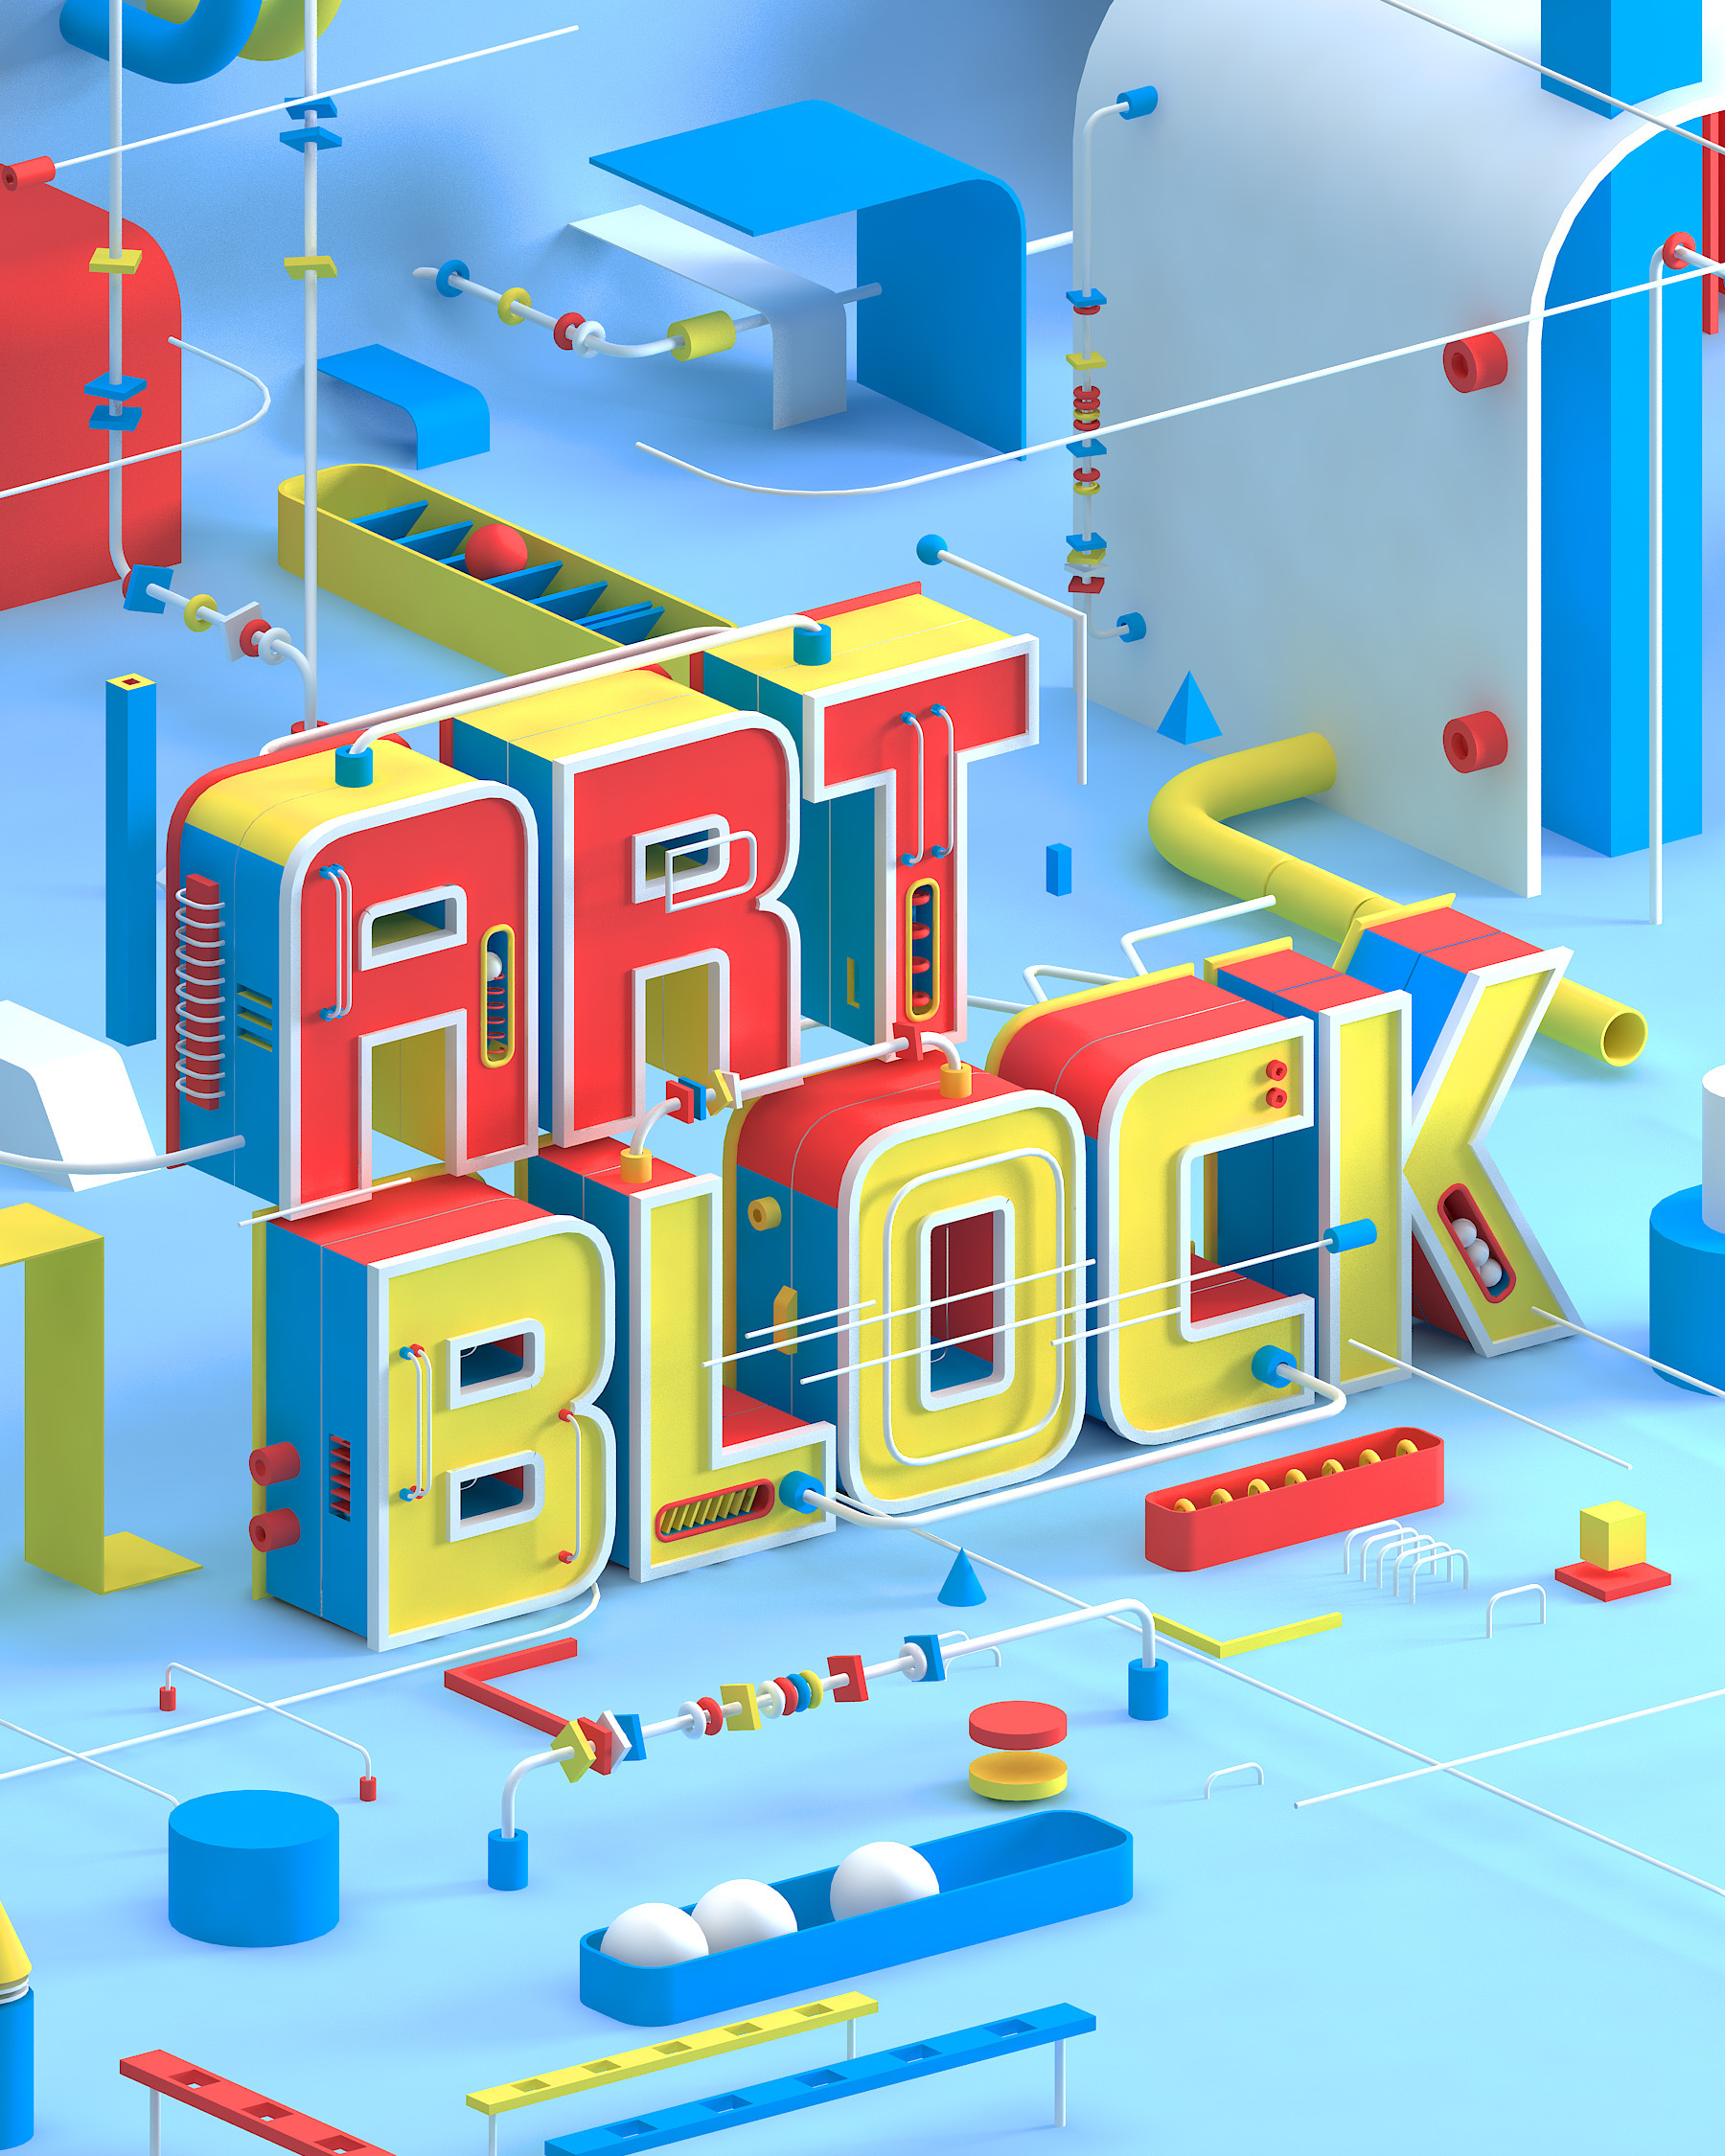 Art Block Studio. Artblock. Art Block Studio boosty. Art block